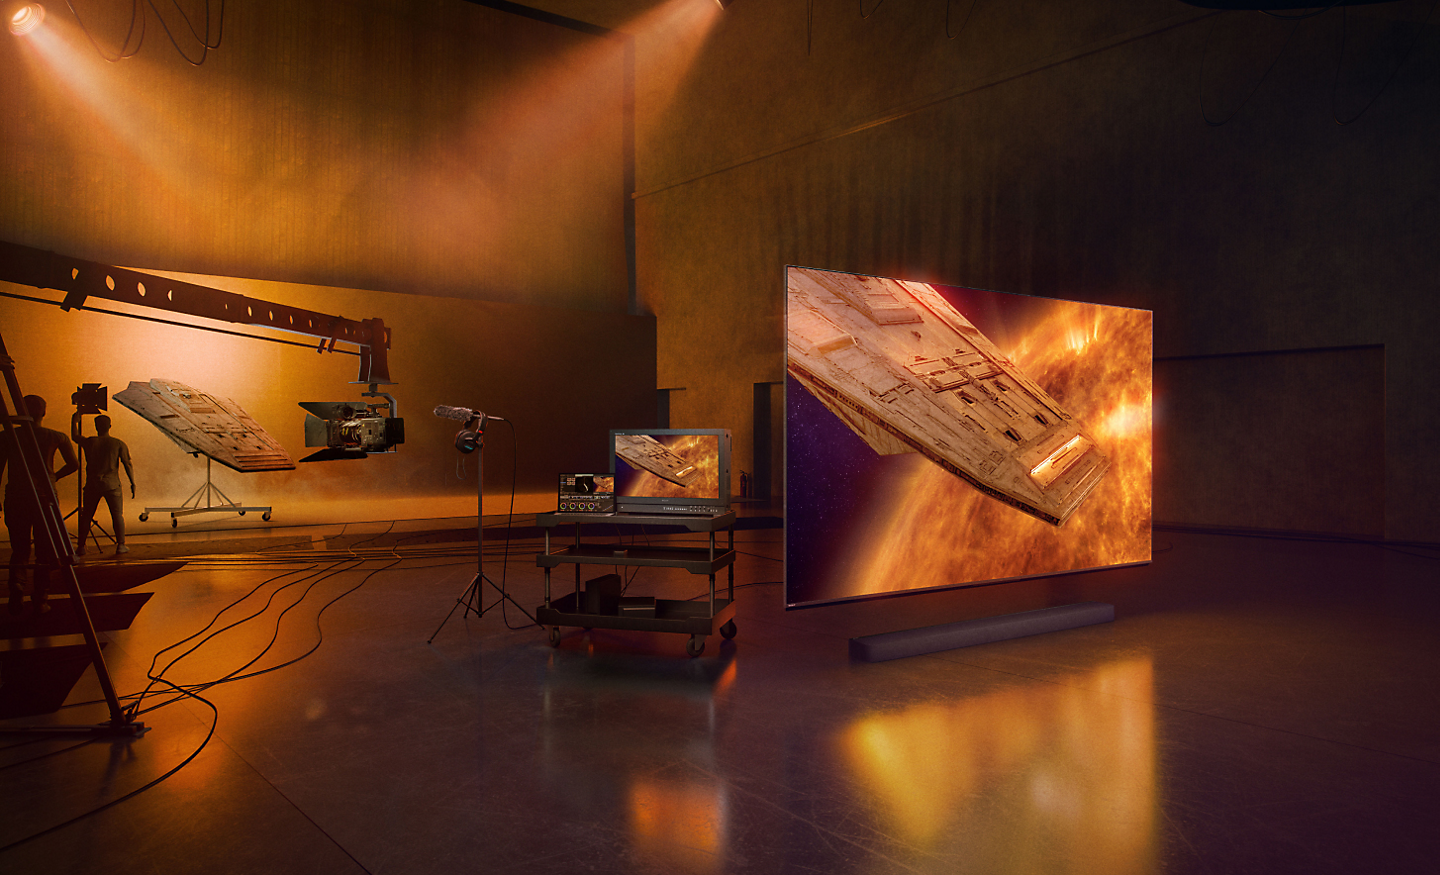 סצנת סטודיו עם צללית של טכנאים וציוד עריכה בצד שמאל, ומבט בזווית על טלוויזיה ומקרן קול בצד ימין, עם צילום מסך של חללית בסביבה מעורפלת בצבעי אדום וכחול